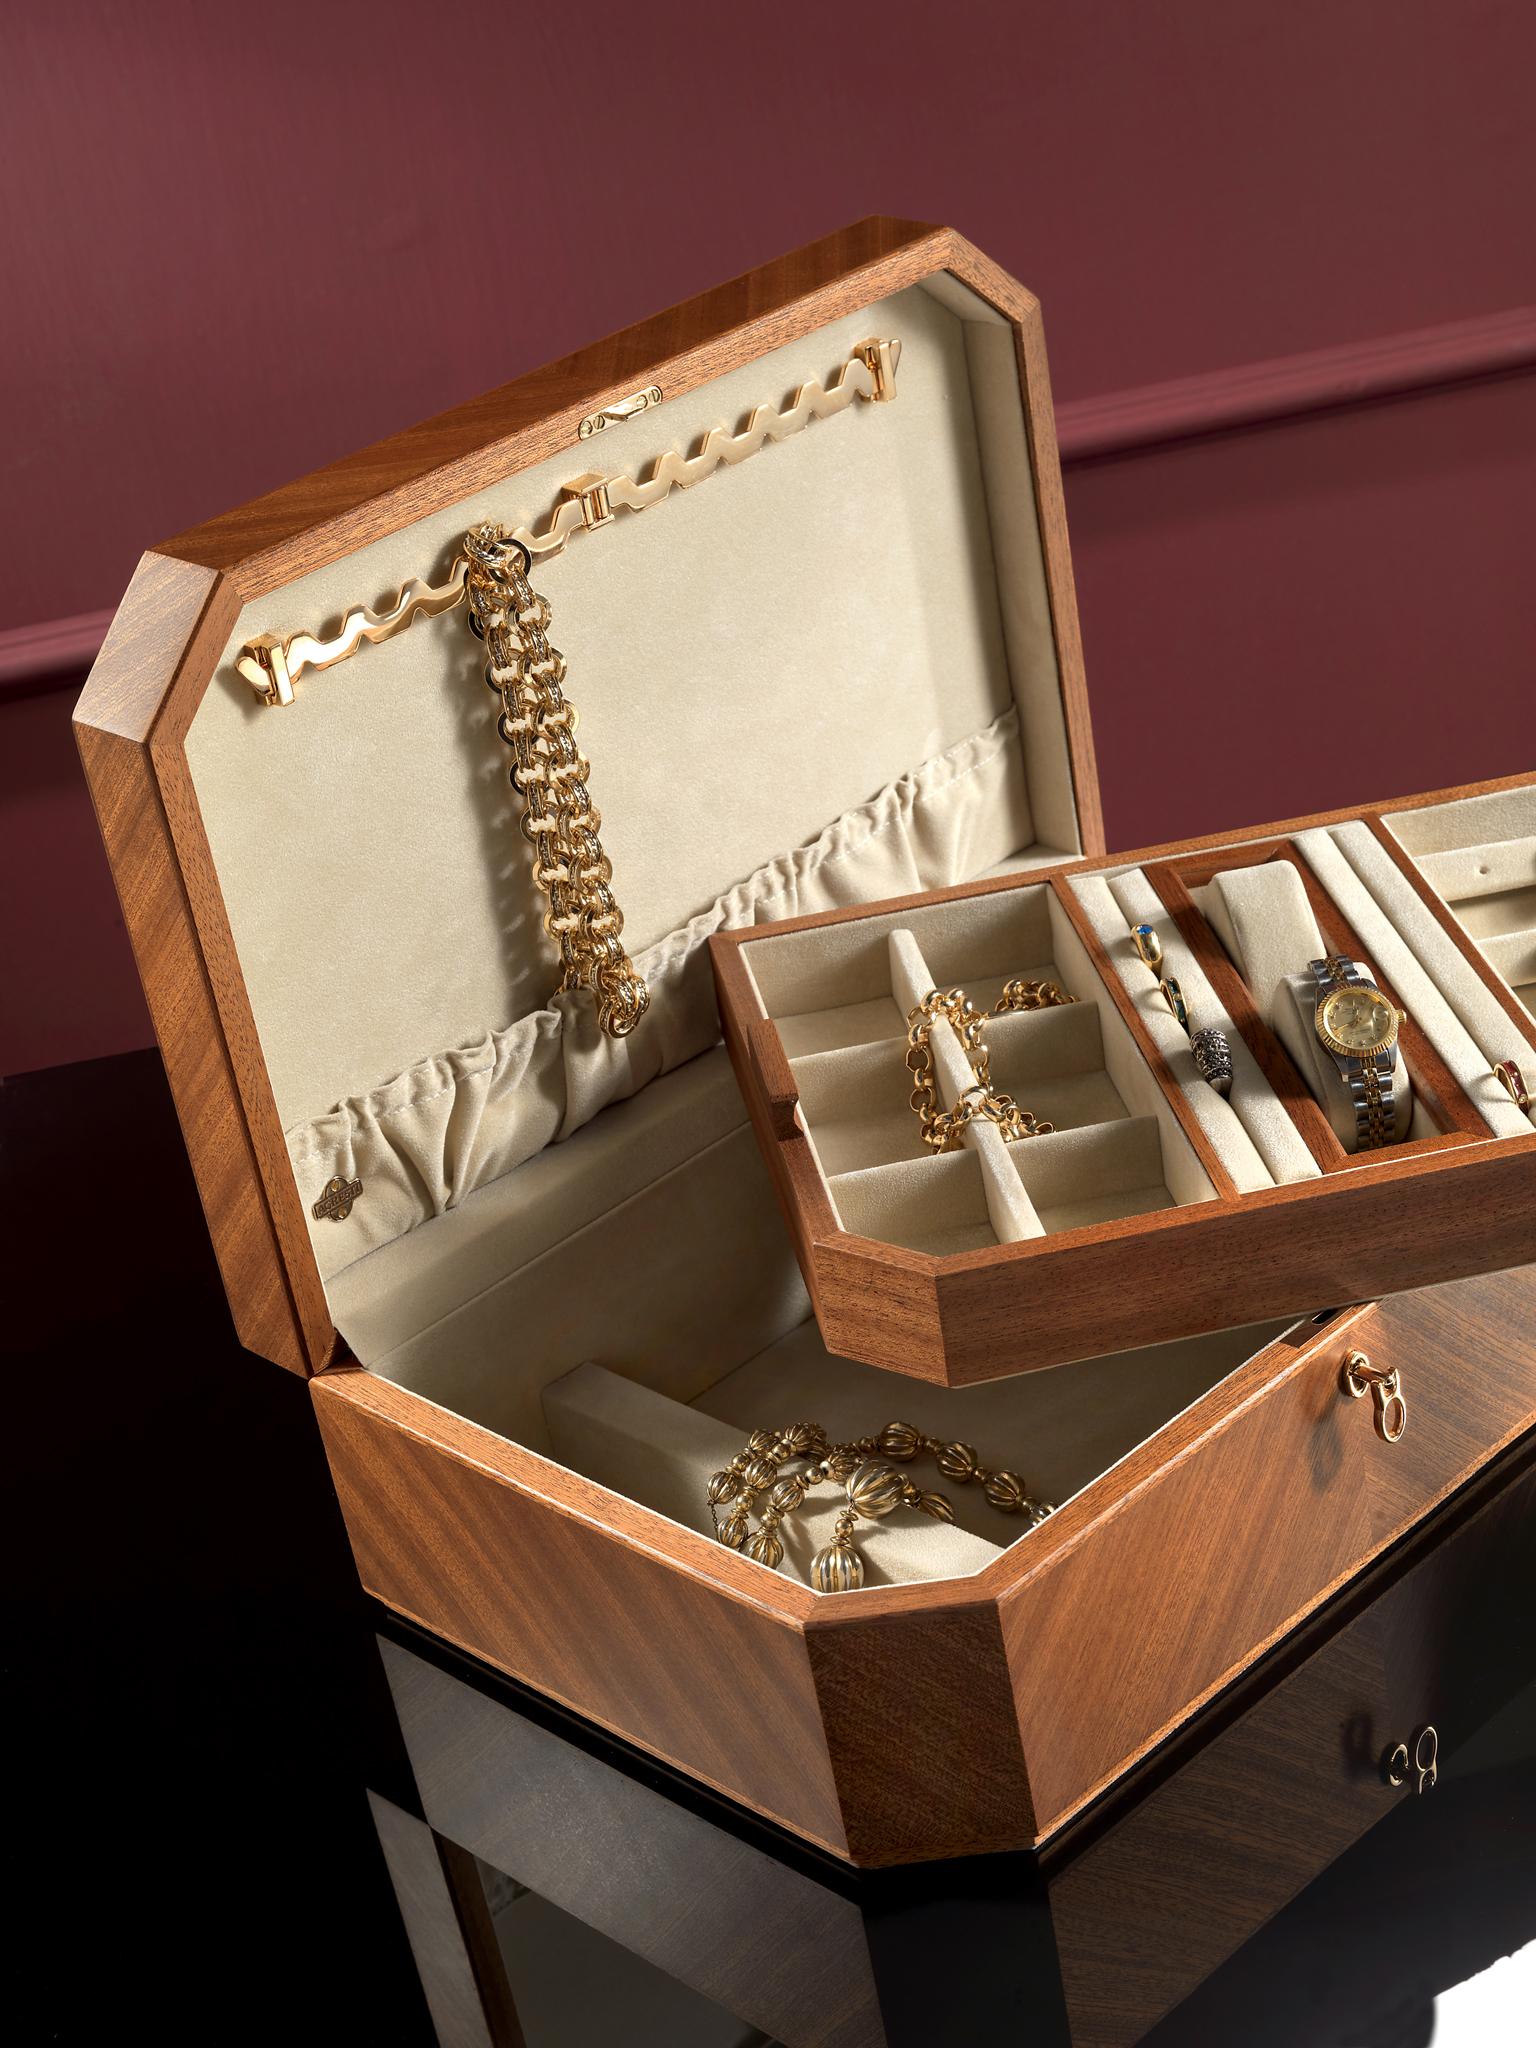 agresti jewelry box